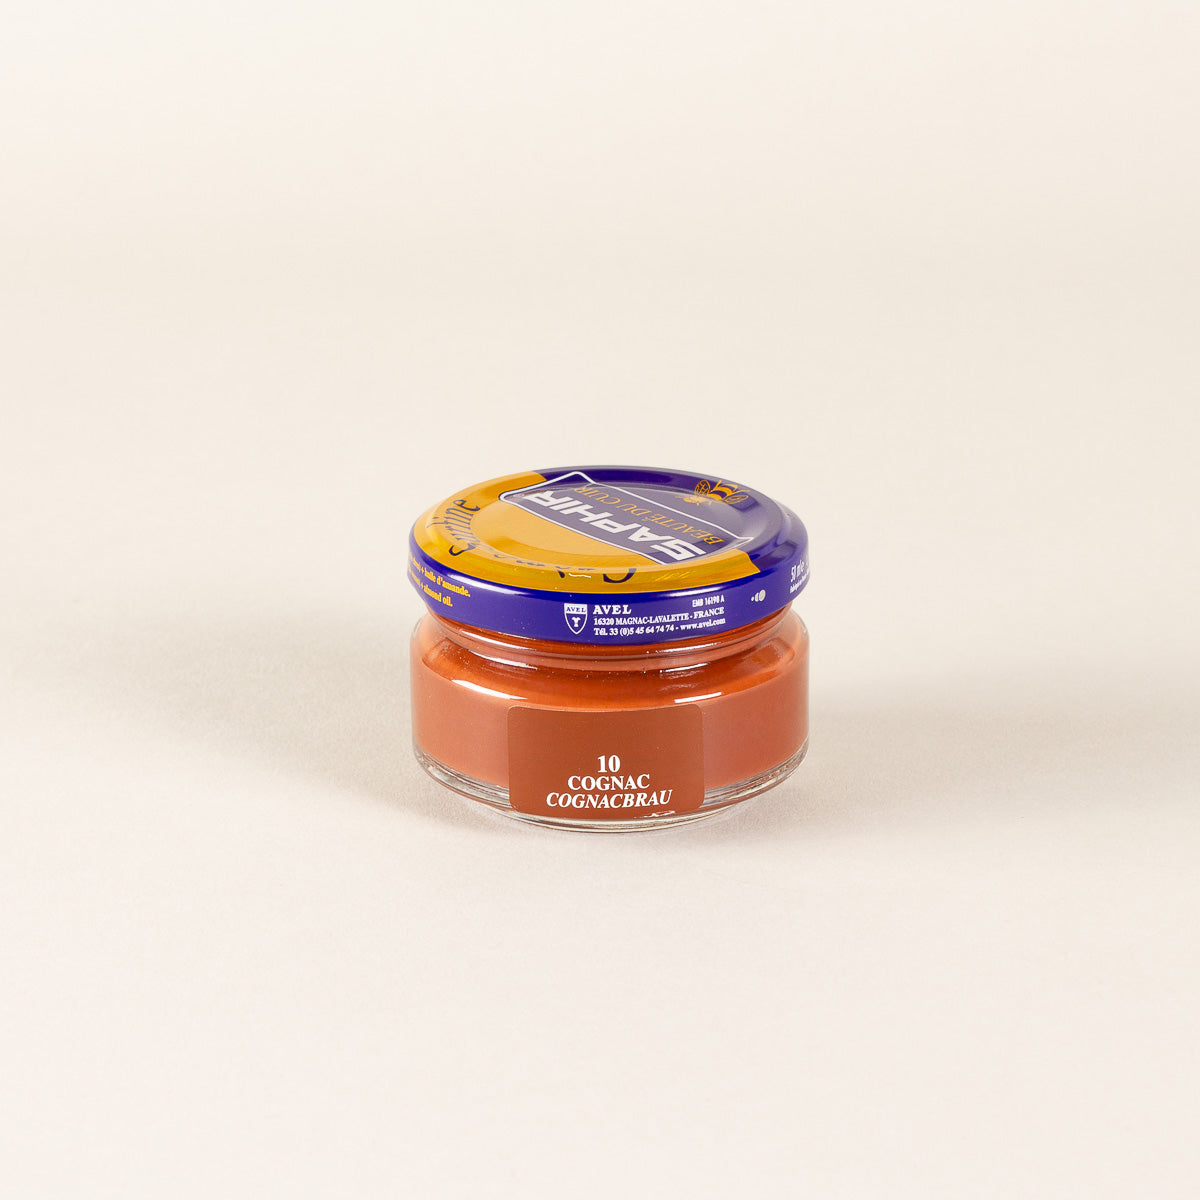 Saphir - Crème Surfine Produit d'entretien pour le cuir à Laval – Boutique  du Cordonnier